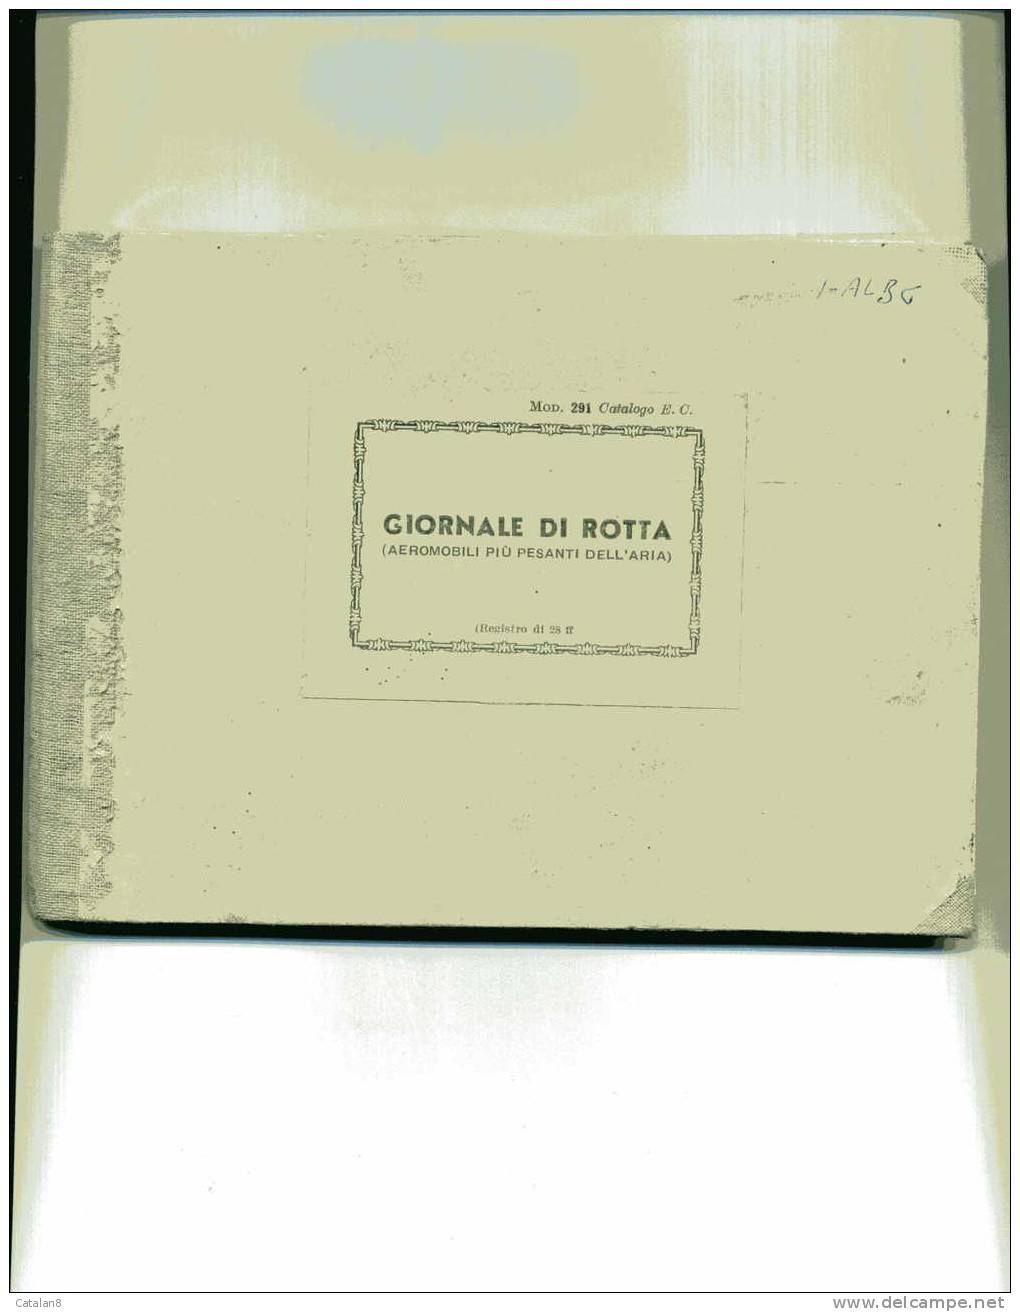 S429 GIORNALE DI ROTTA AEROMOBILE CIVILE 1964 - Safety Cards